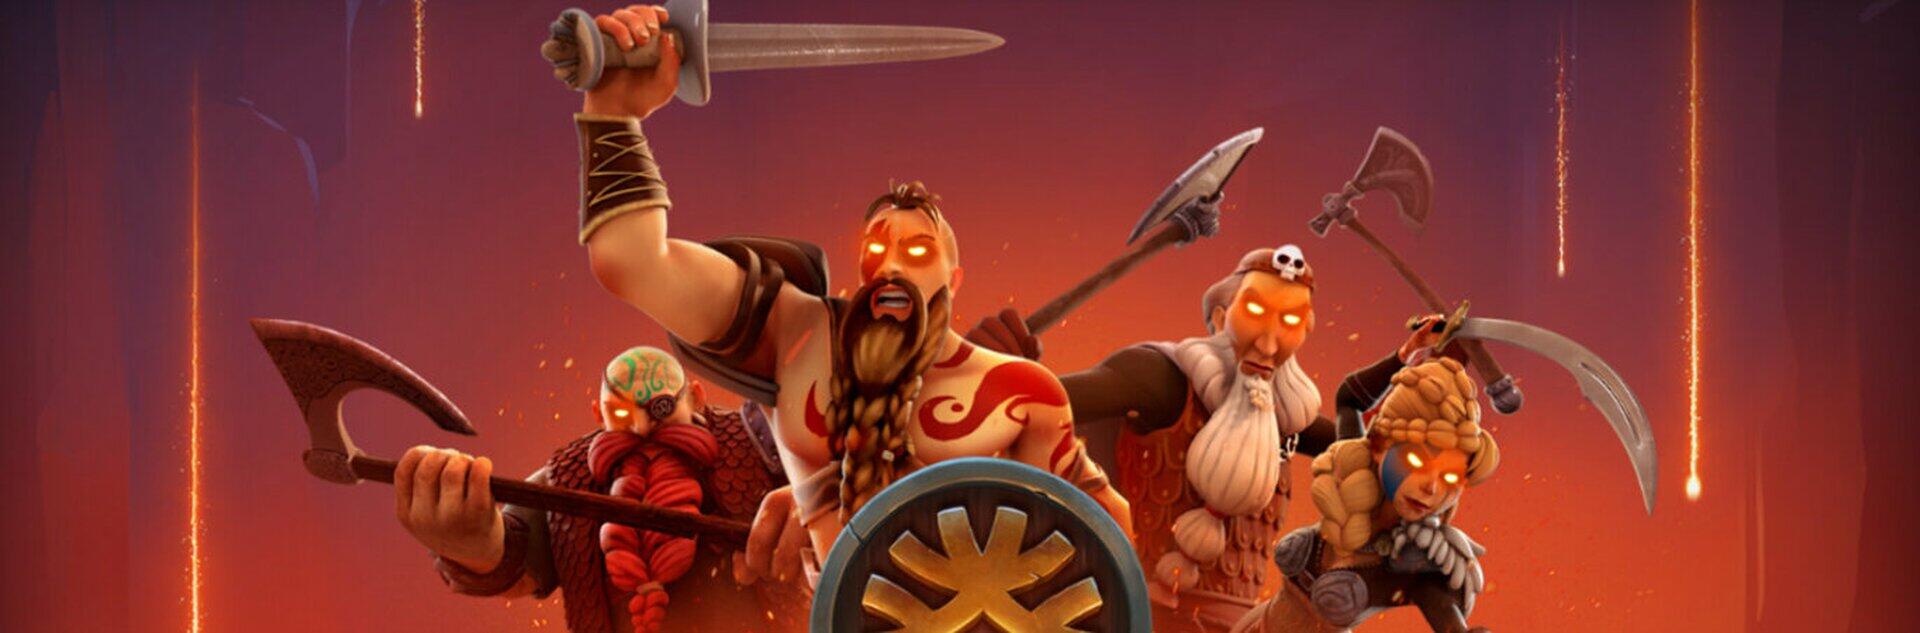 Vikings Go Berzerk Reloaded Slot